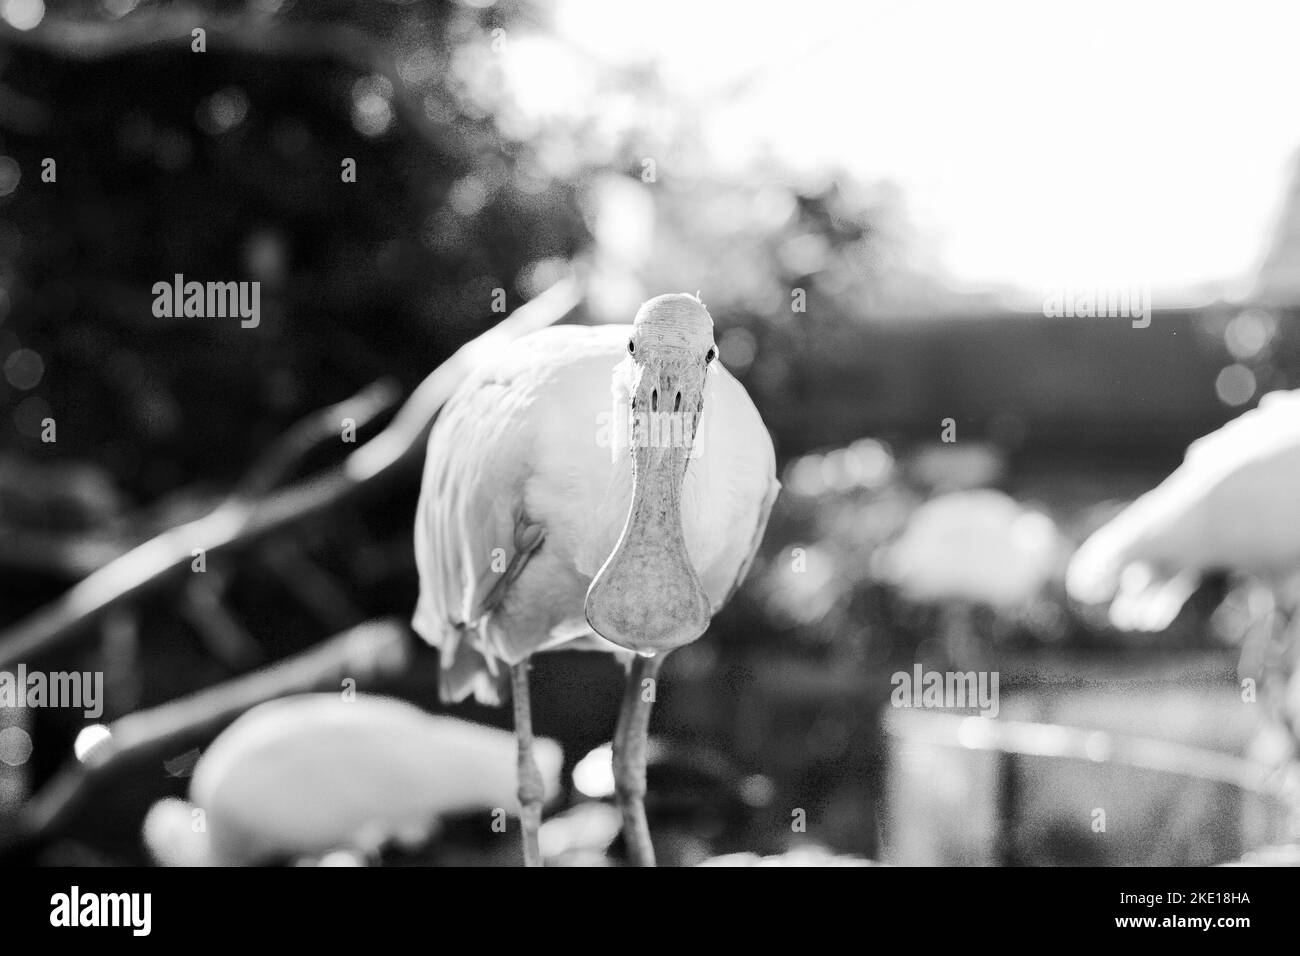 Lustiges Tierbild. Ein Vogel mit einem deutlich flachen Schnabel blickt direkt in die Kamera. Stockfoto